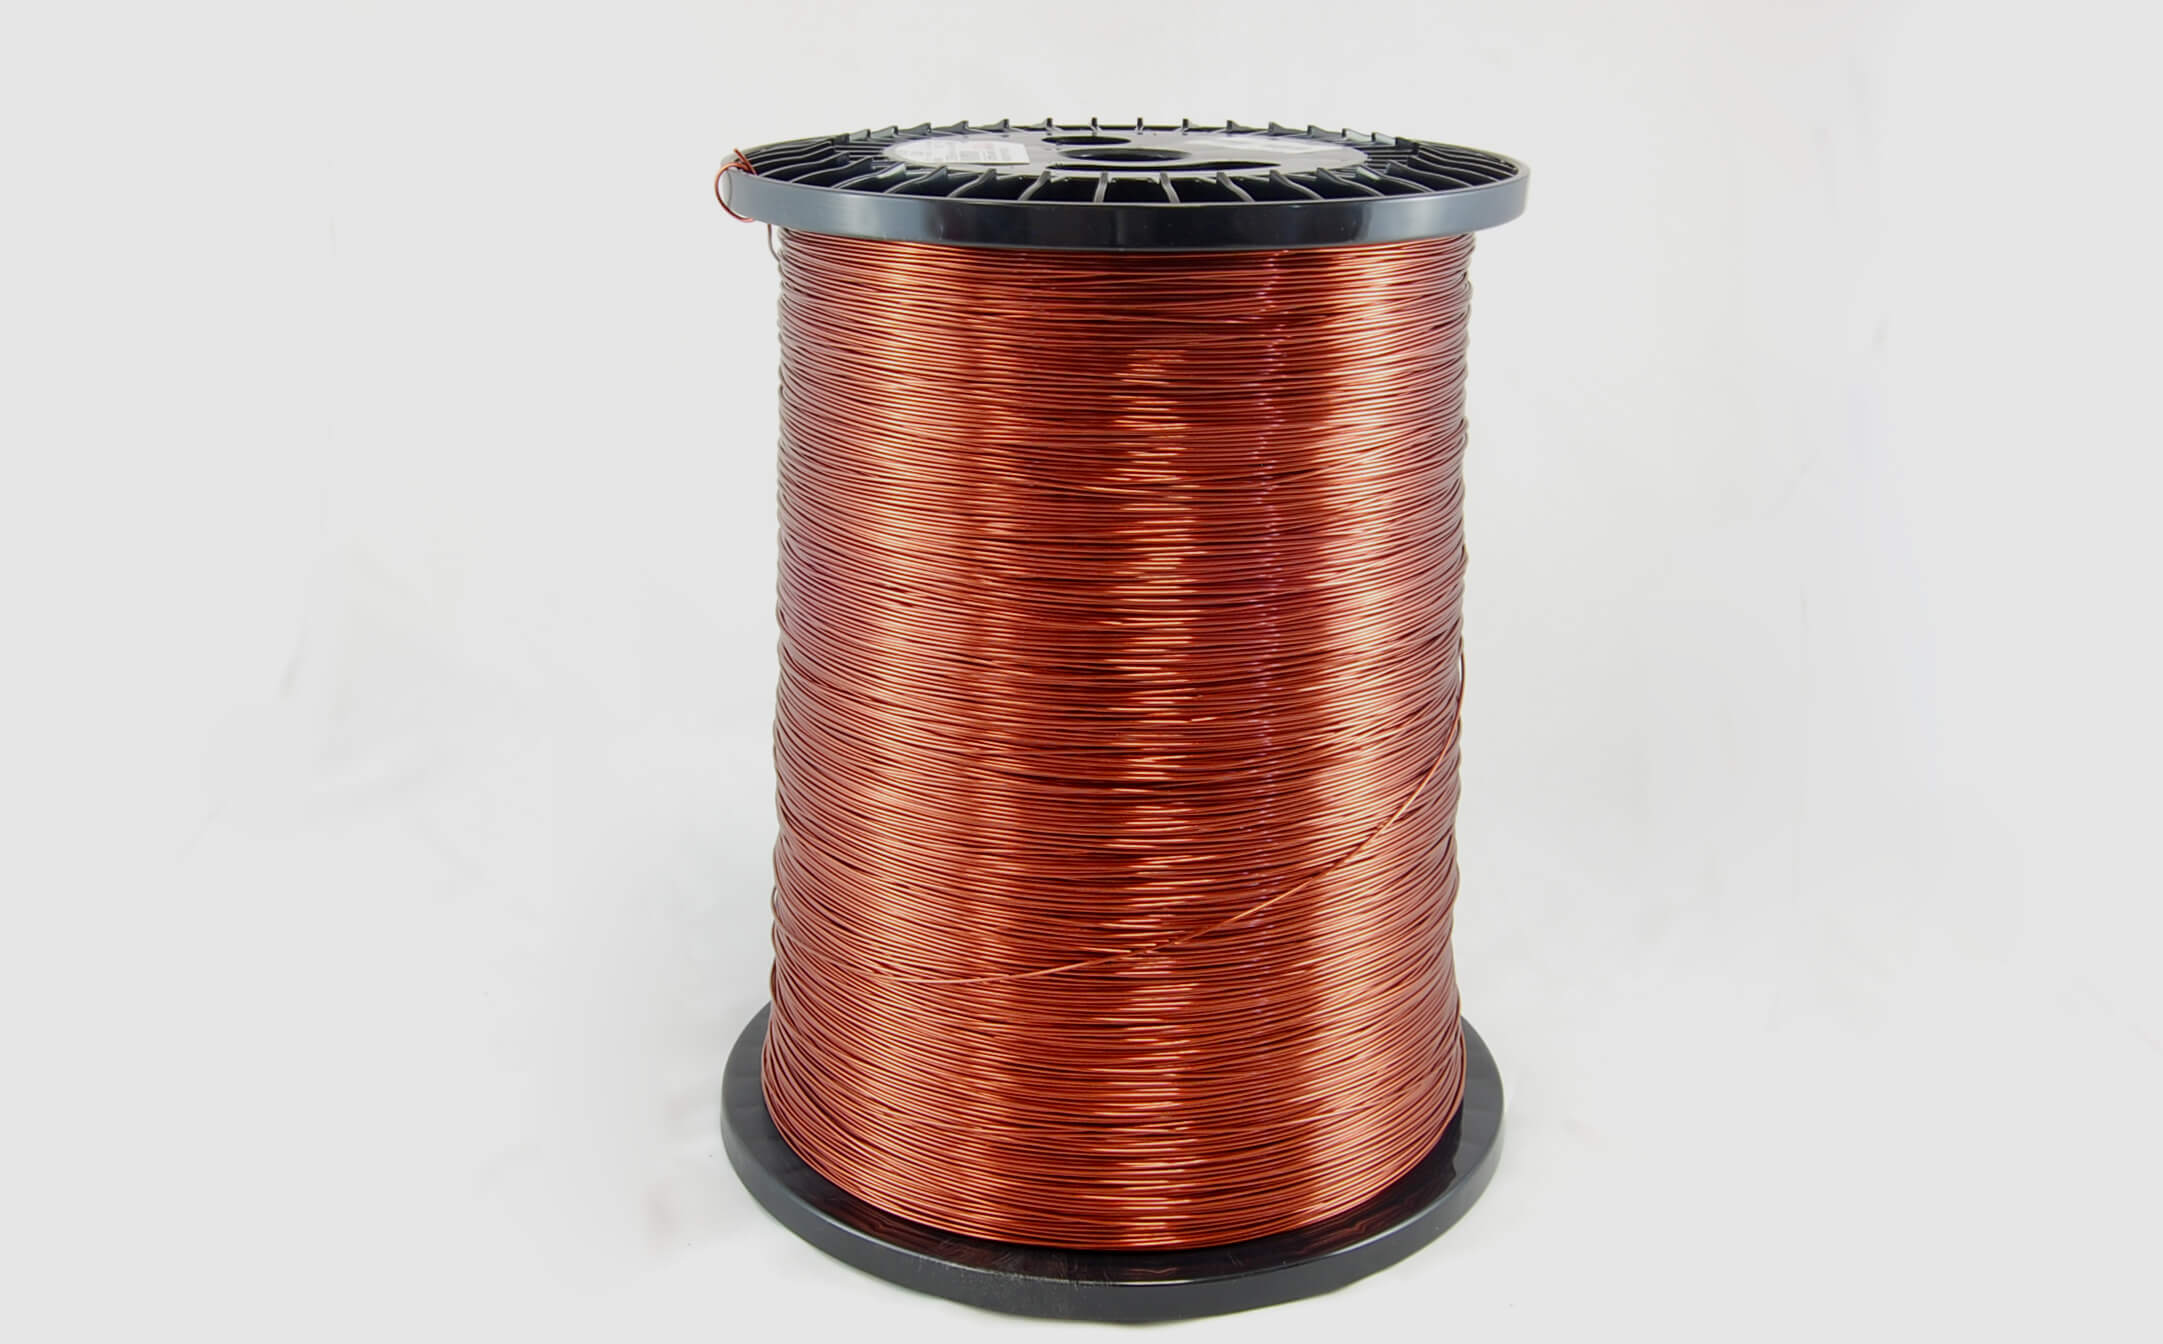 #14 Heavy Super Hyslik 200 Round HTAIH MW 35 Copper Magnet Wire 200°C, copper, 85 LB pail (average wght.)